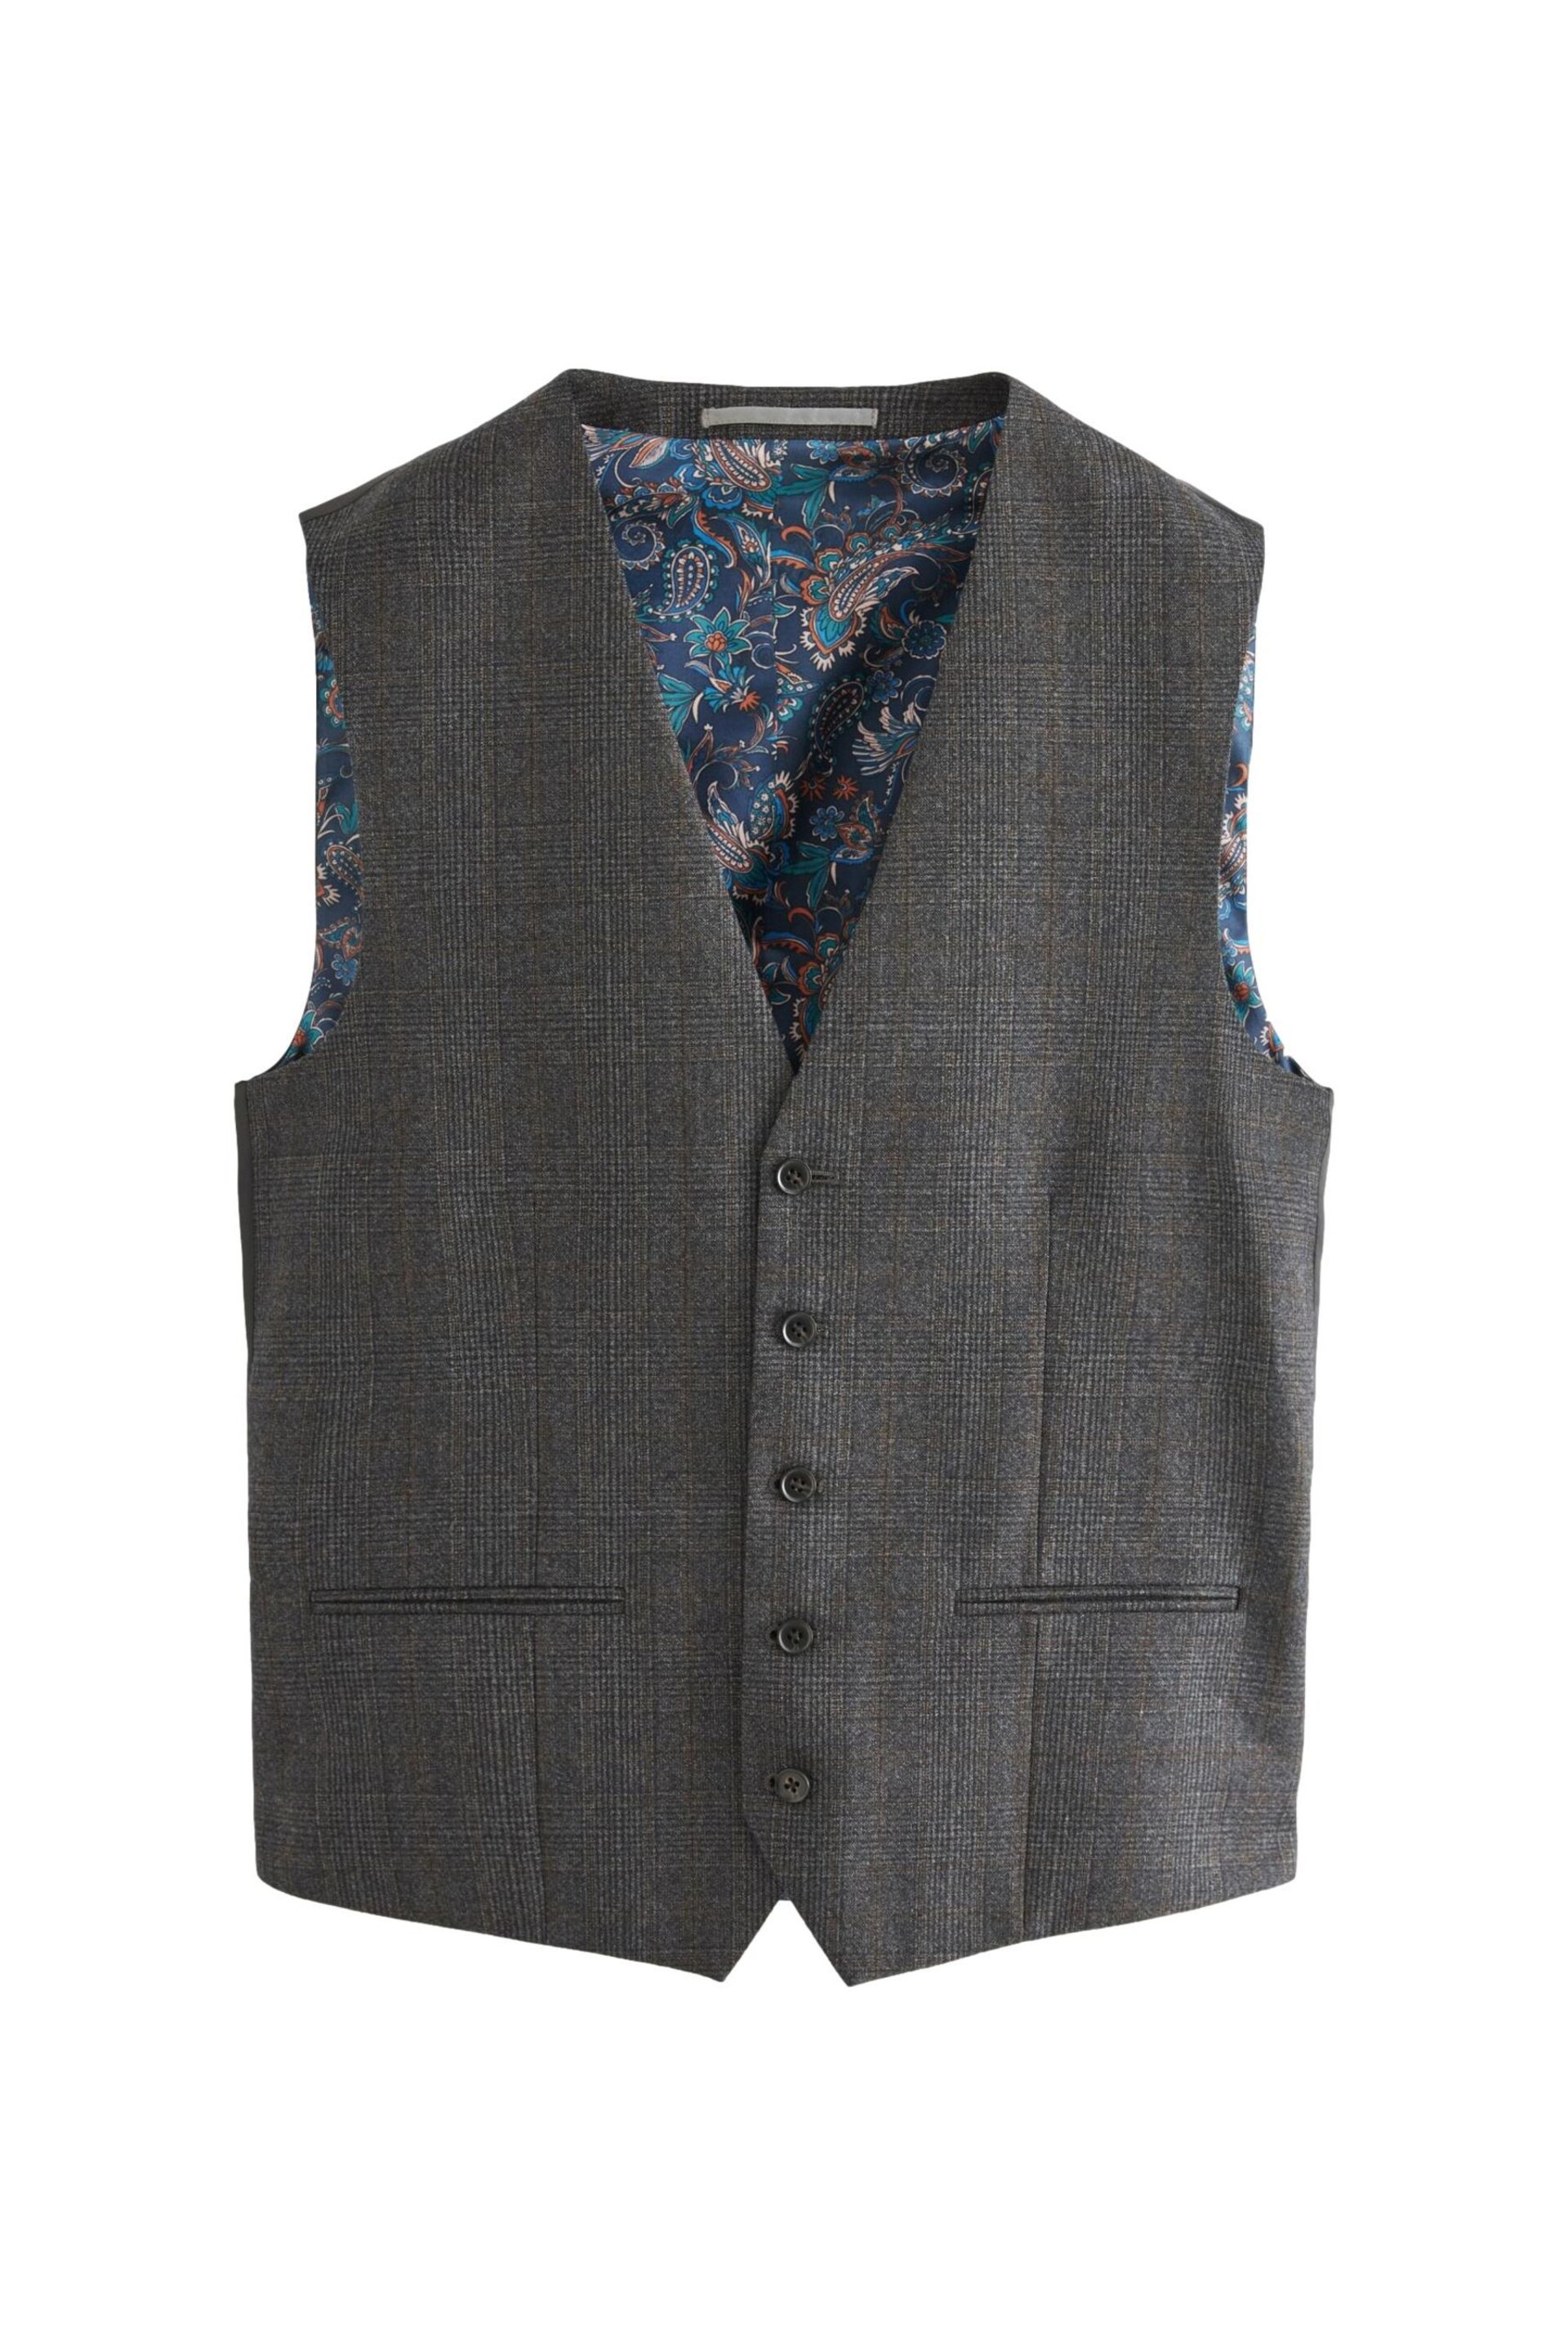 Charcoal Grey Regular Fit Signature TG Di Fabio Italian Fabric Check Waistcoat - Image 5 of 11